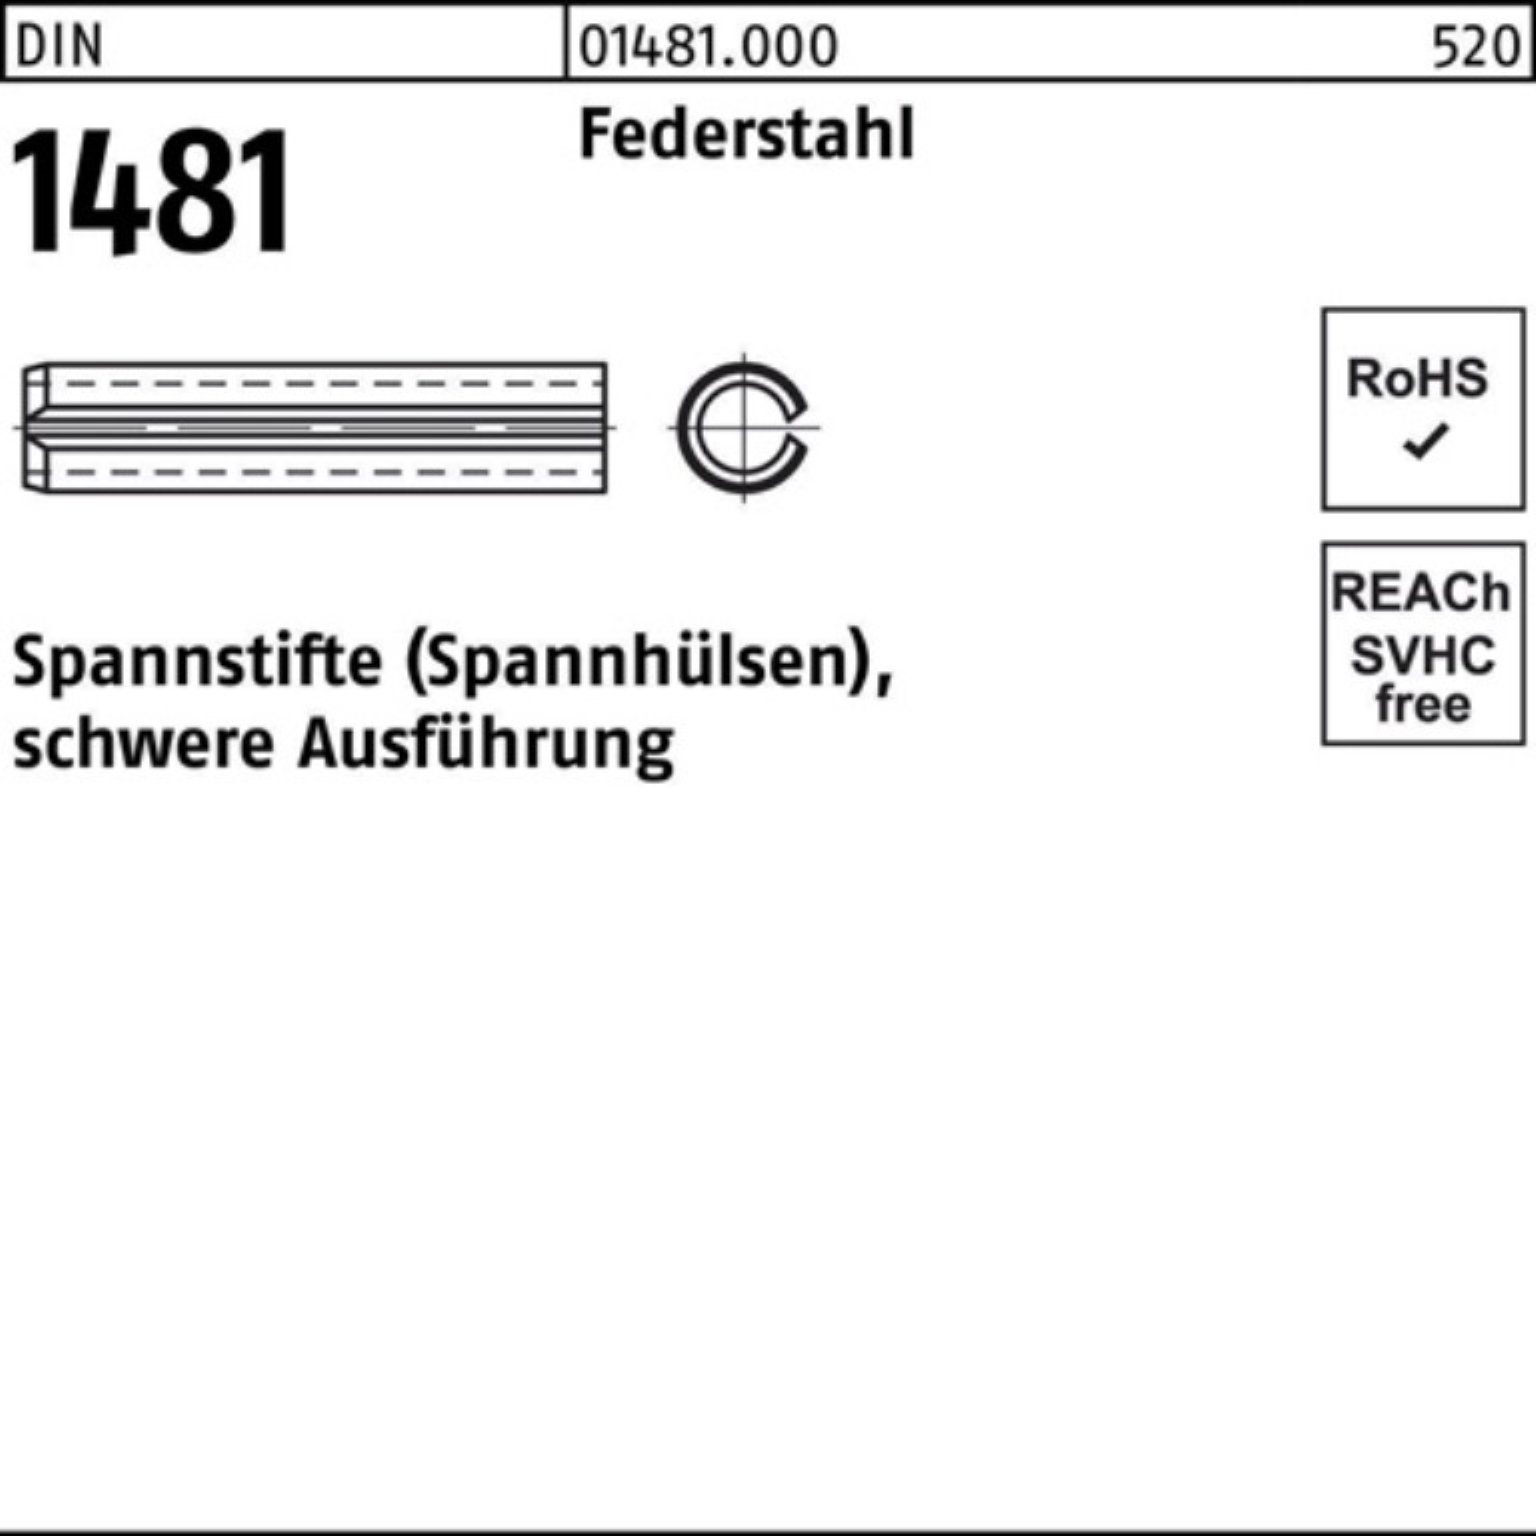 Reyher Spannstift 100er Pack Federstahl 1481 Ausführung schwere DIN 14x Spannstift 140